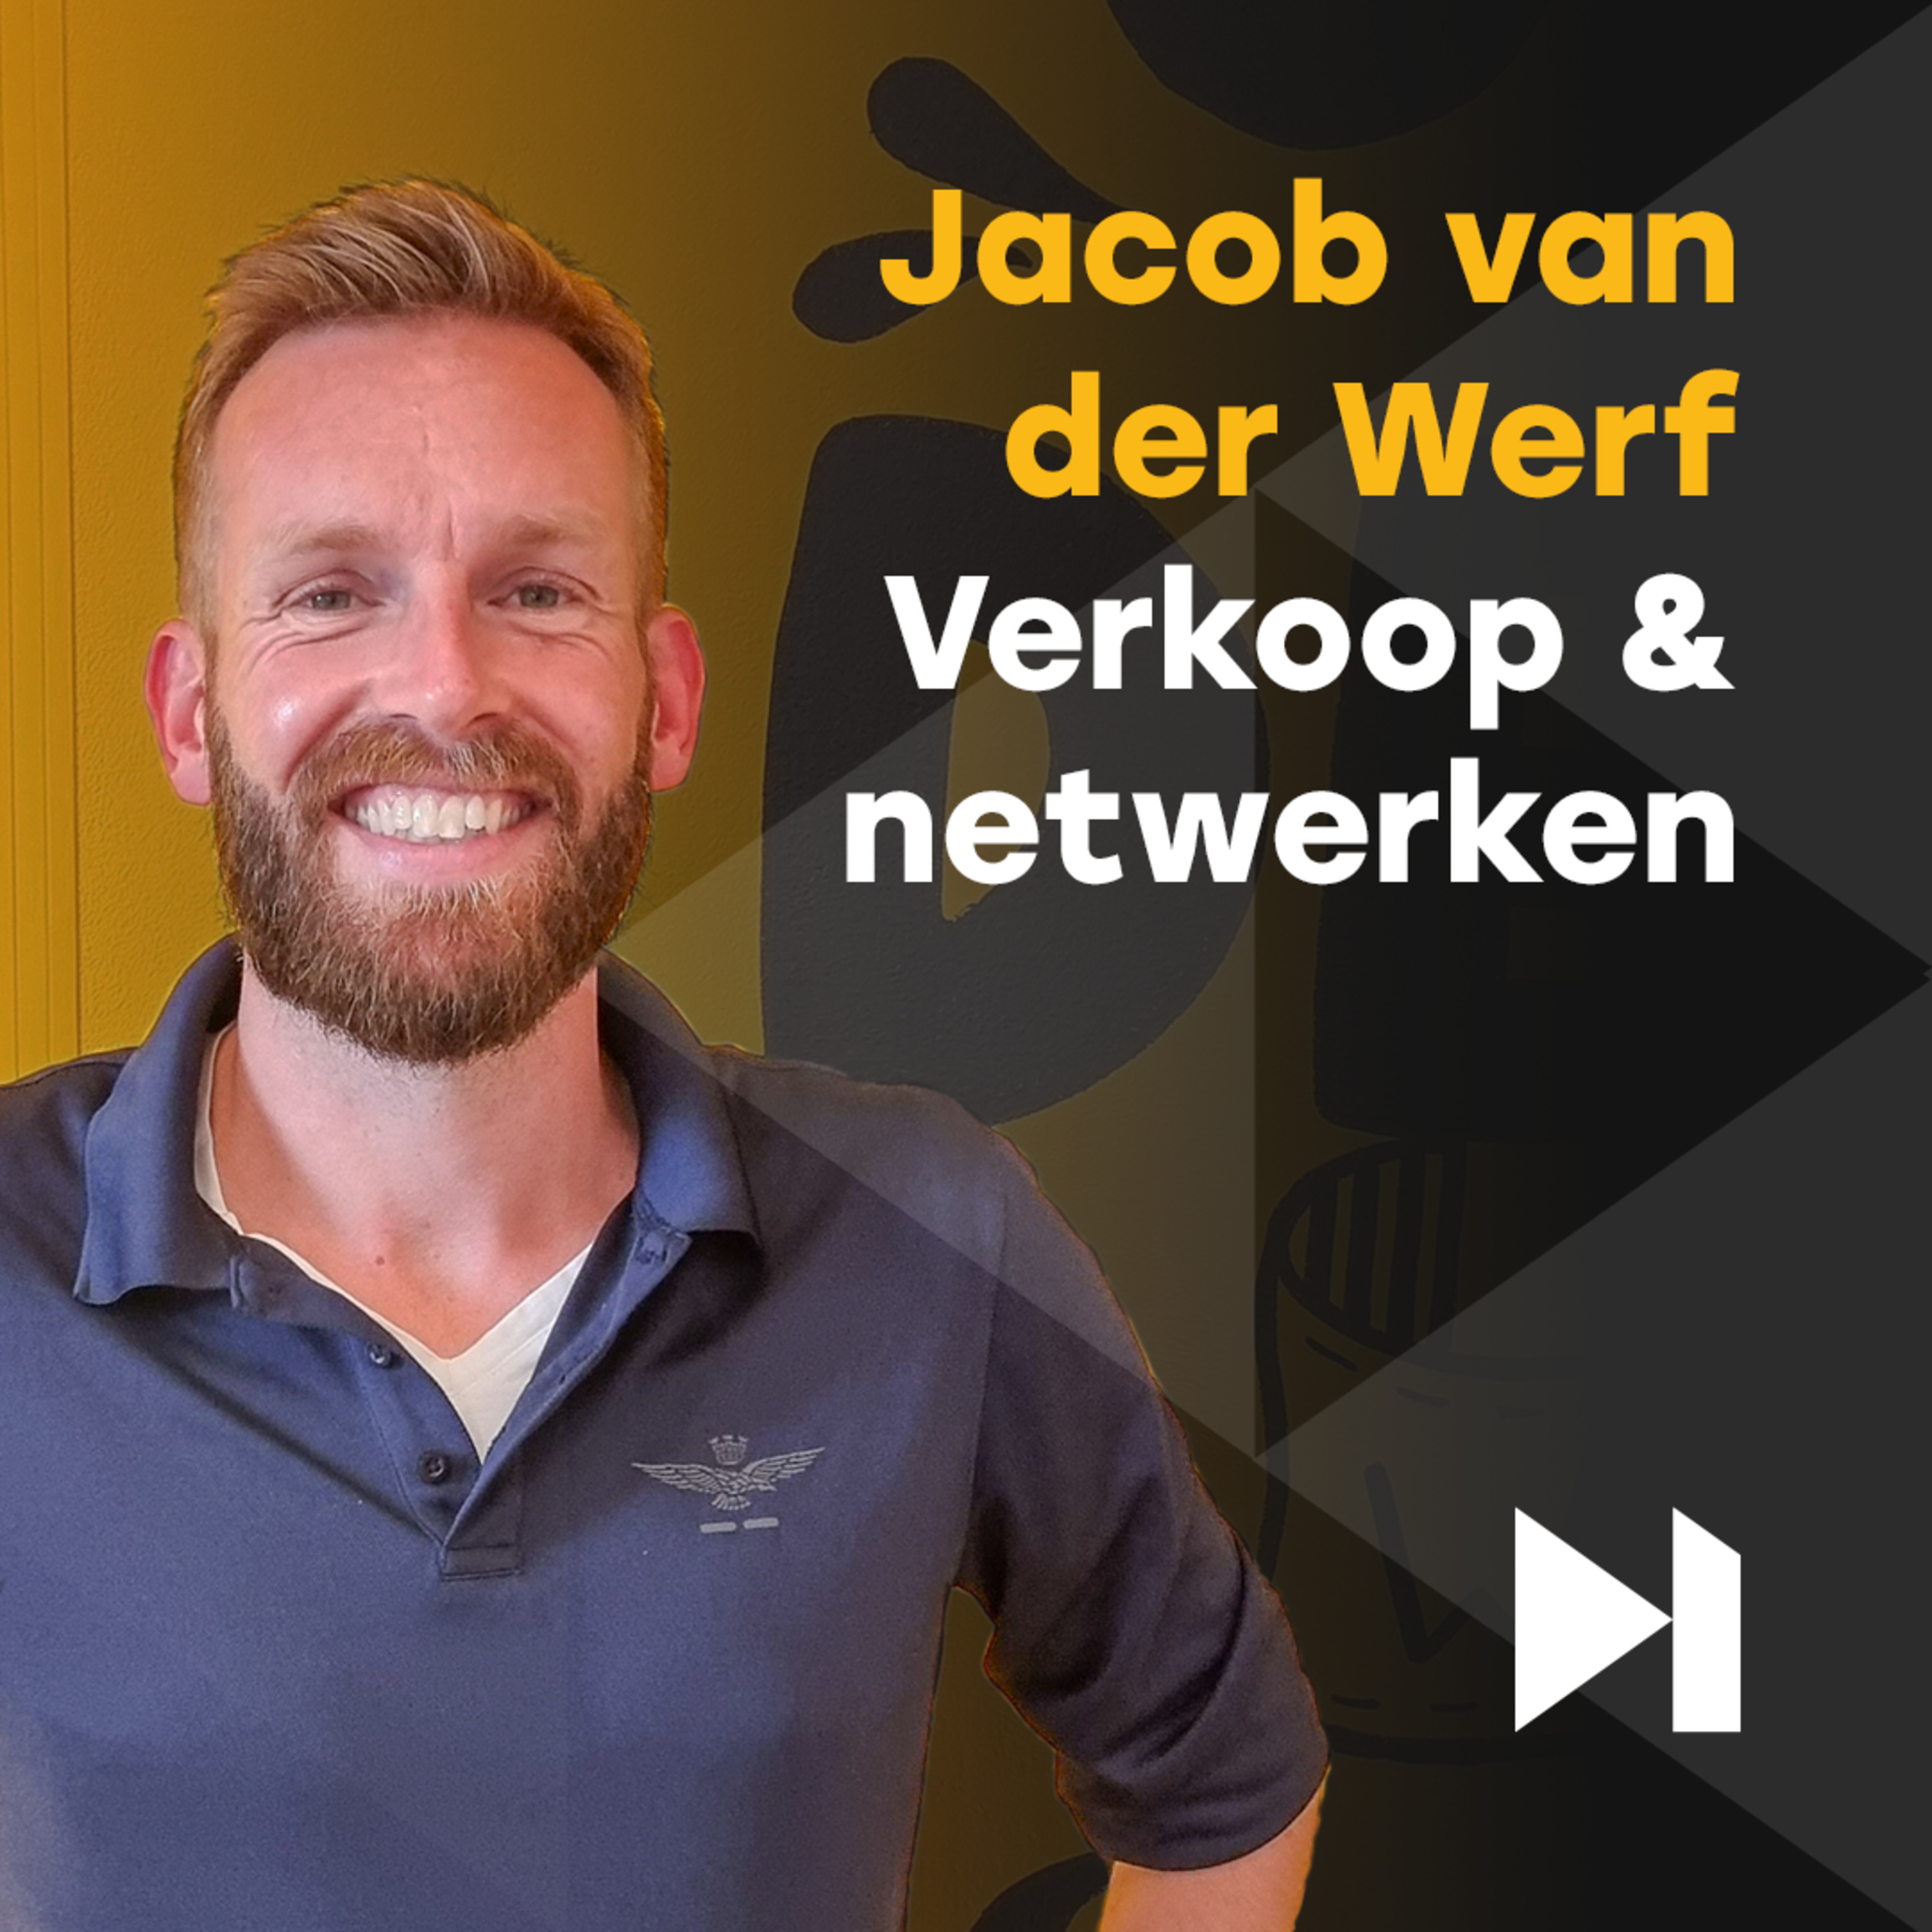 Jacob van der Werf over VERKOOP, NETWERKEN en BURN-OUTS | Skip to Action Podcast S3E10